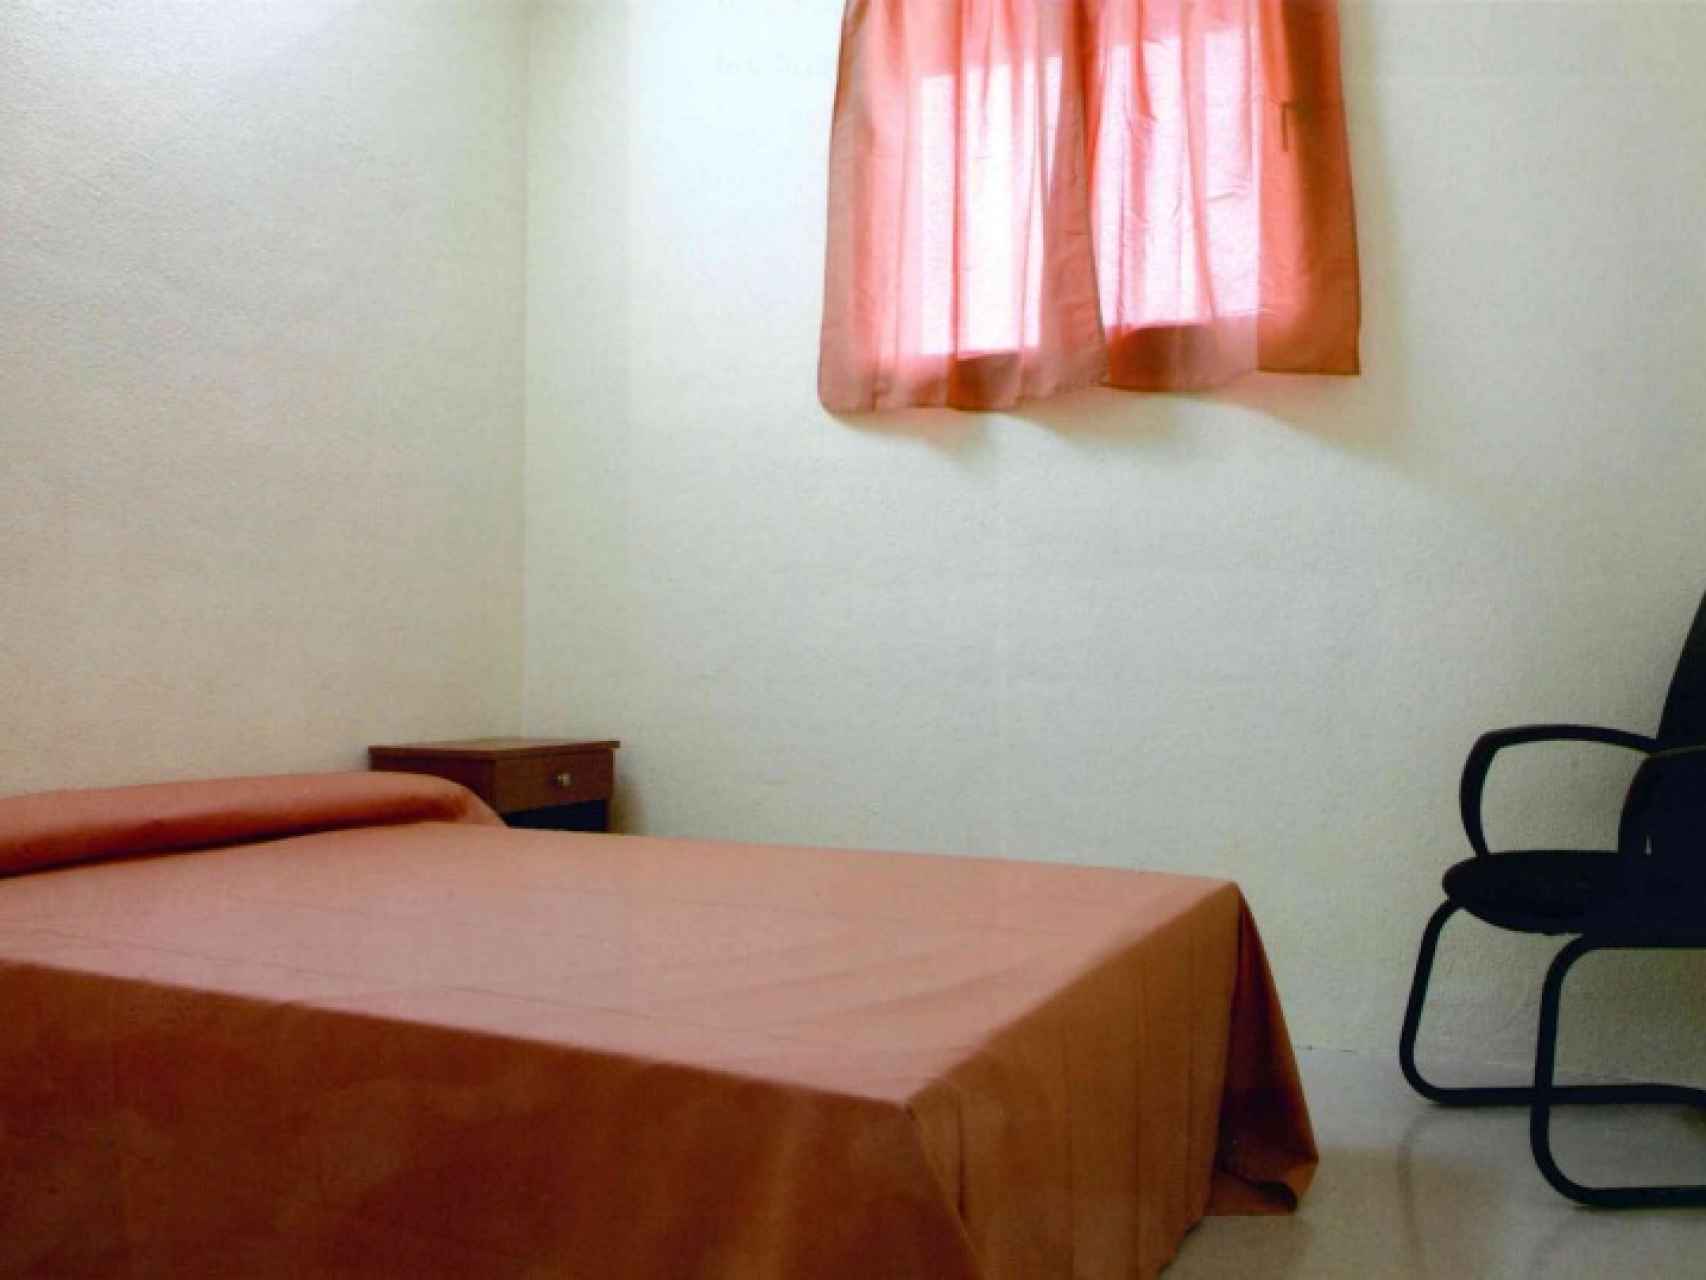 Imagen de una de las celdas donde tienen lugar los vis a vis íntimos.